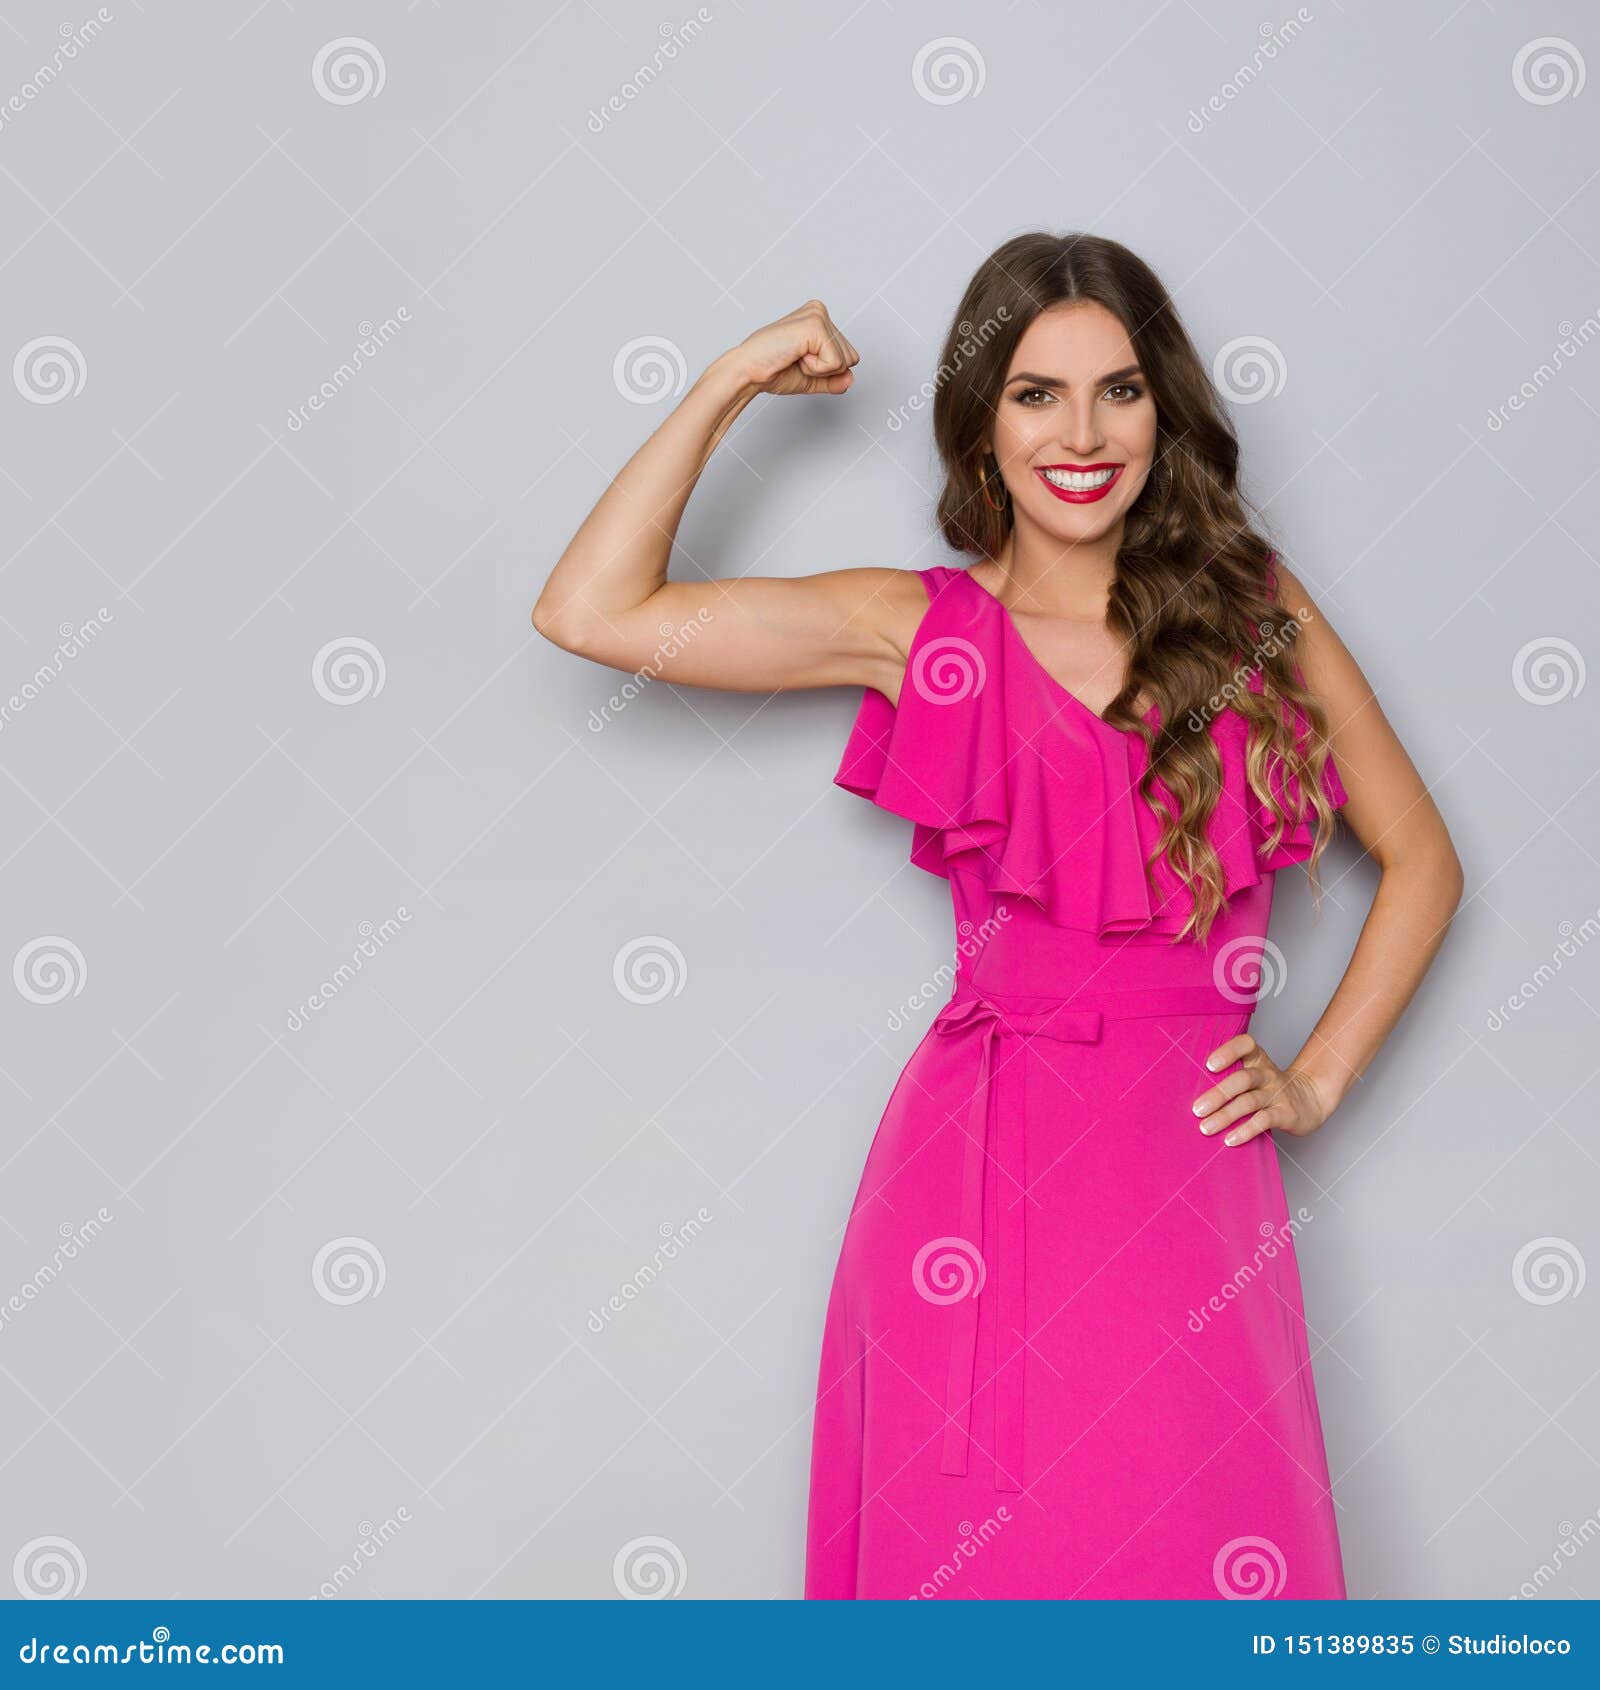 Starke Frau Im Eleganten Rosa Kleid Biegt Muskeln Und Das Lacheln Stockbild Bild Von Schauen Kamera 151389835